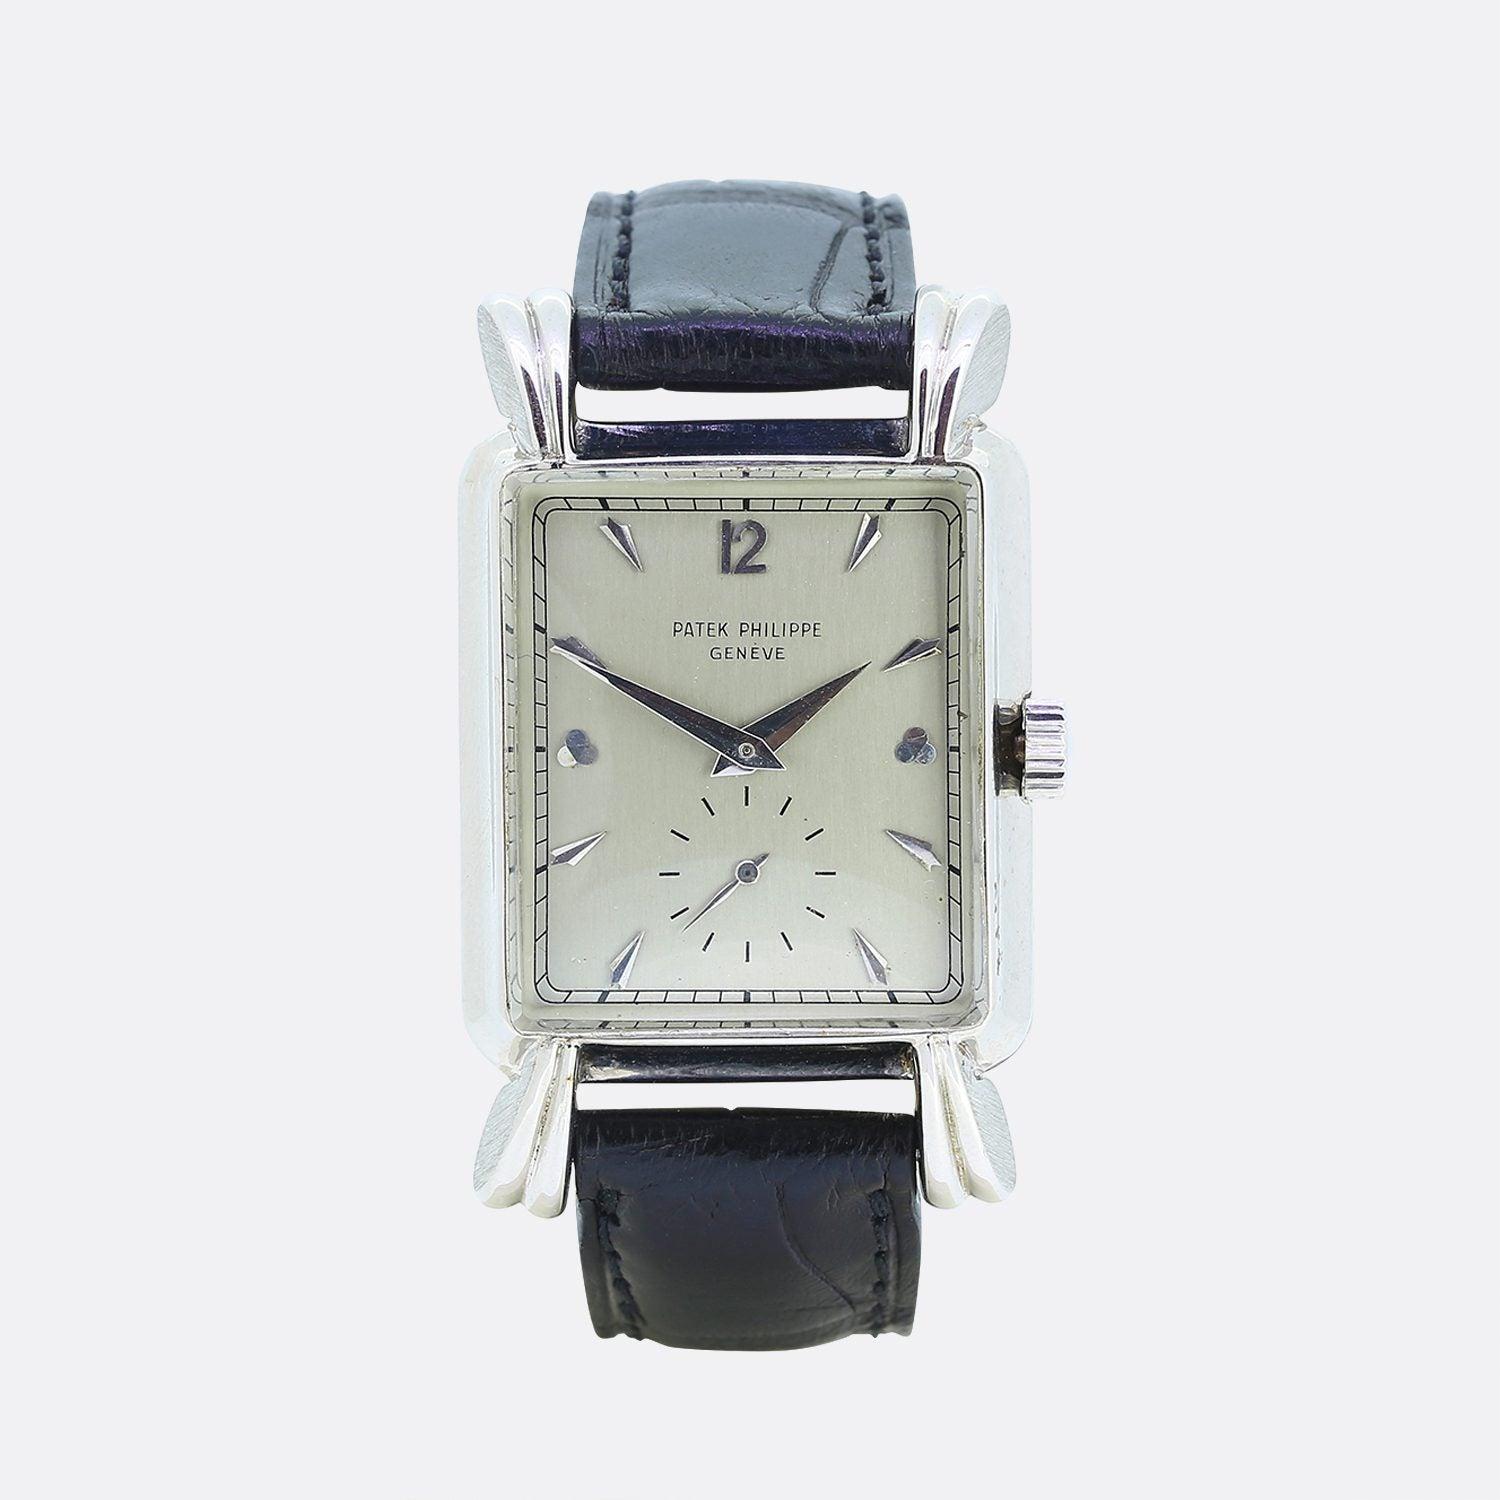 Dies ist eine wunderbare 1950er Jahre Herren Patek Philippe Armbanduhr. Die Uhr verfügt über ein silbernes Zifferblatt mit weißen Stunden- und Minutenzeigern und einem Sekundenzifferblatt bei 6 Uhr. Die kannelierten, überhängenden, tropfenförmigen